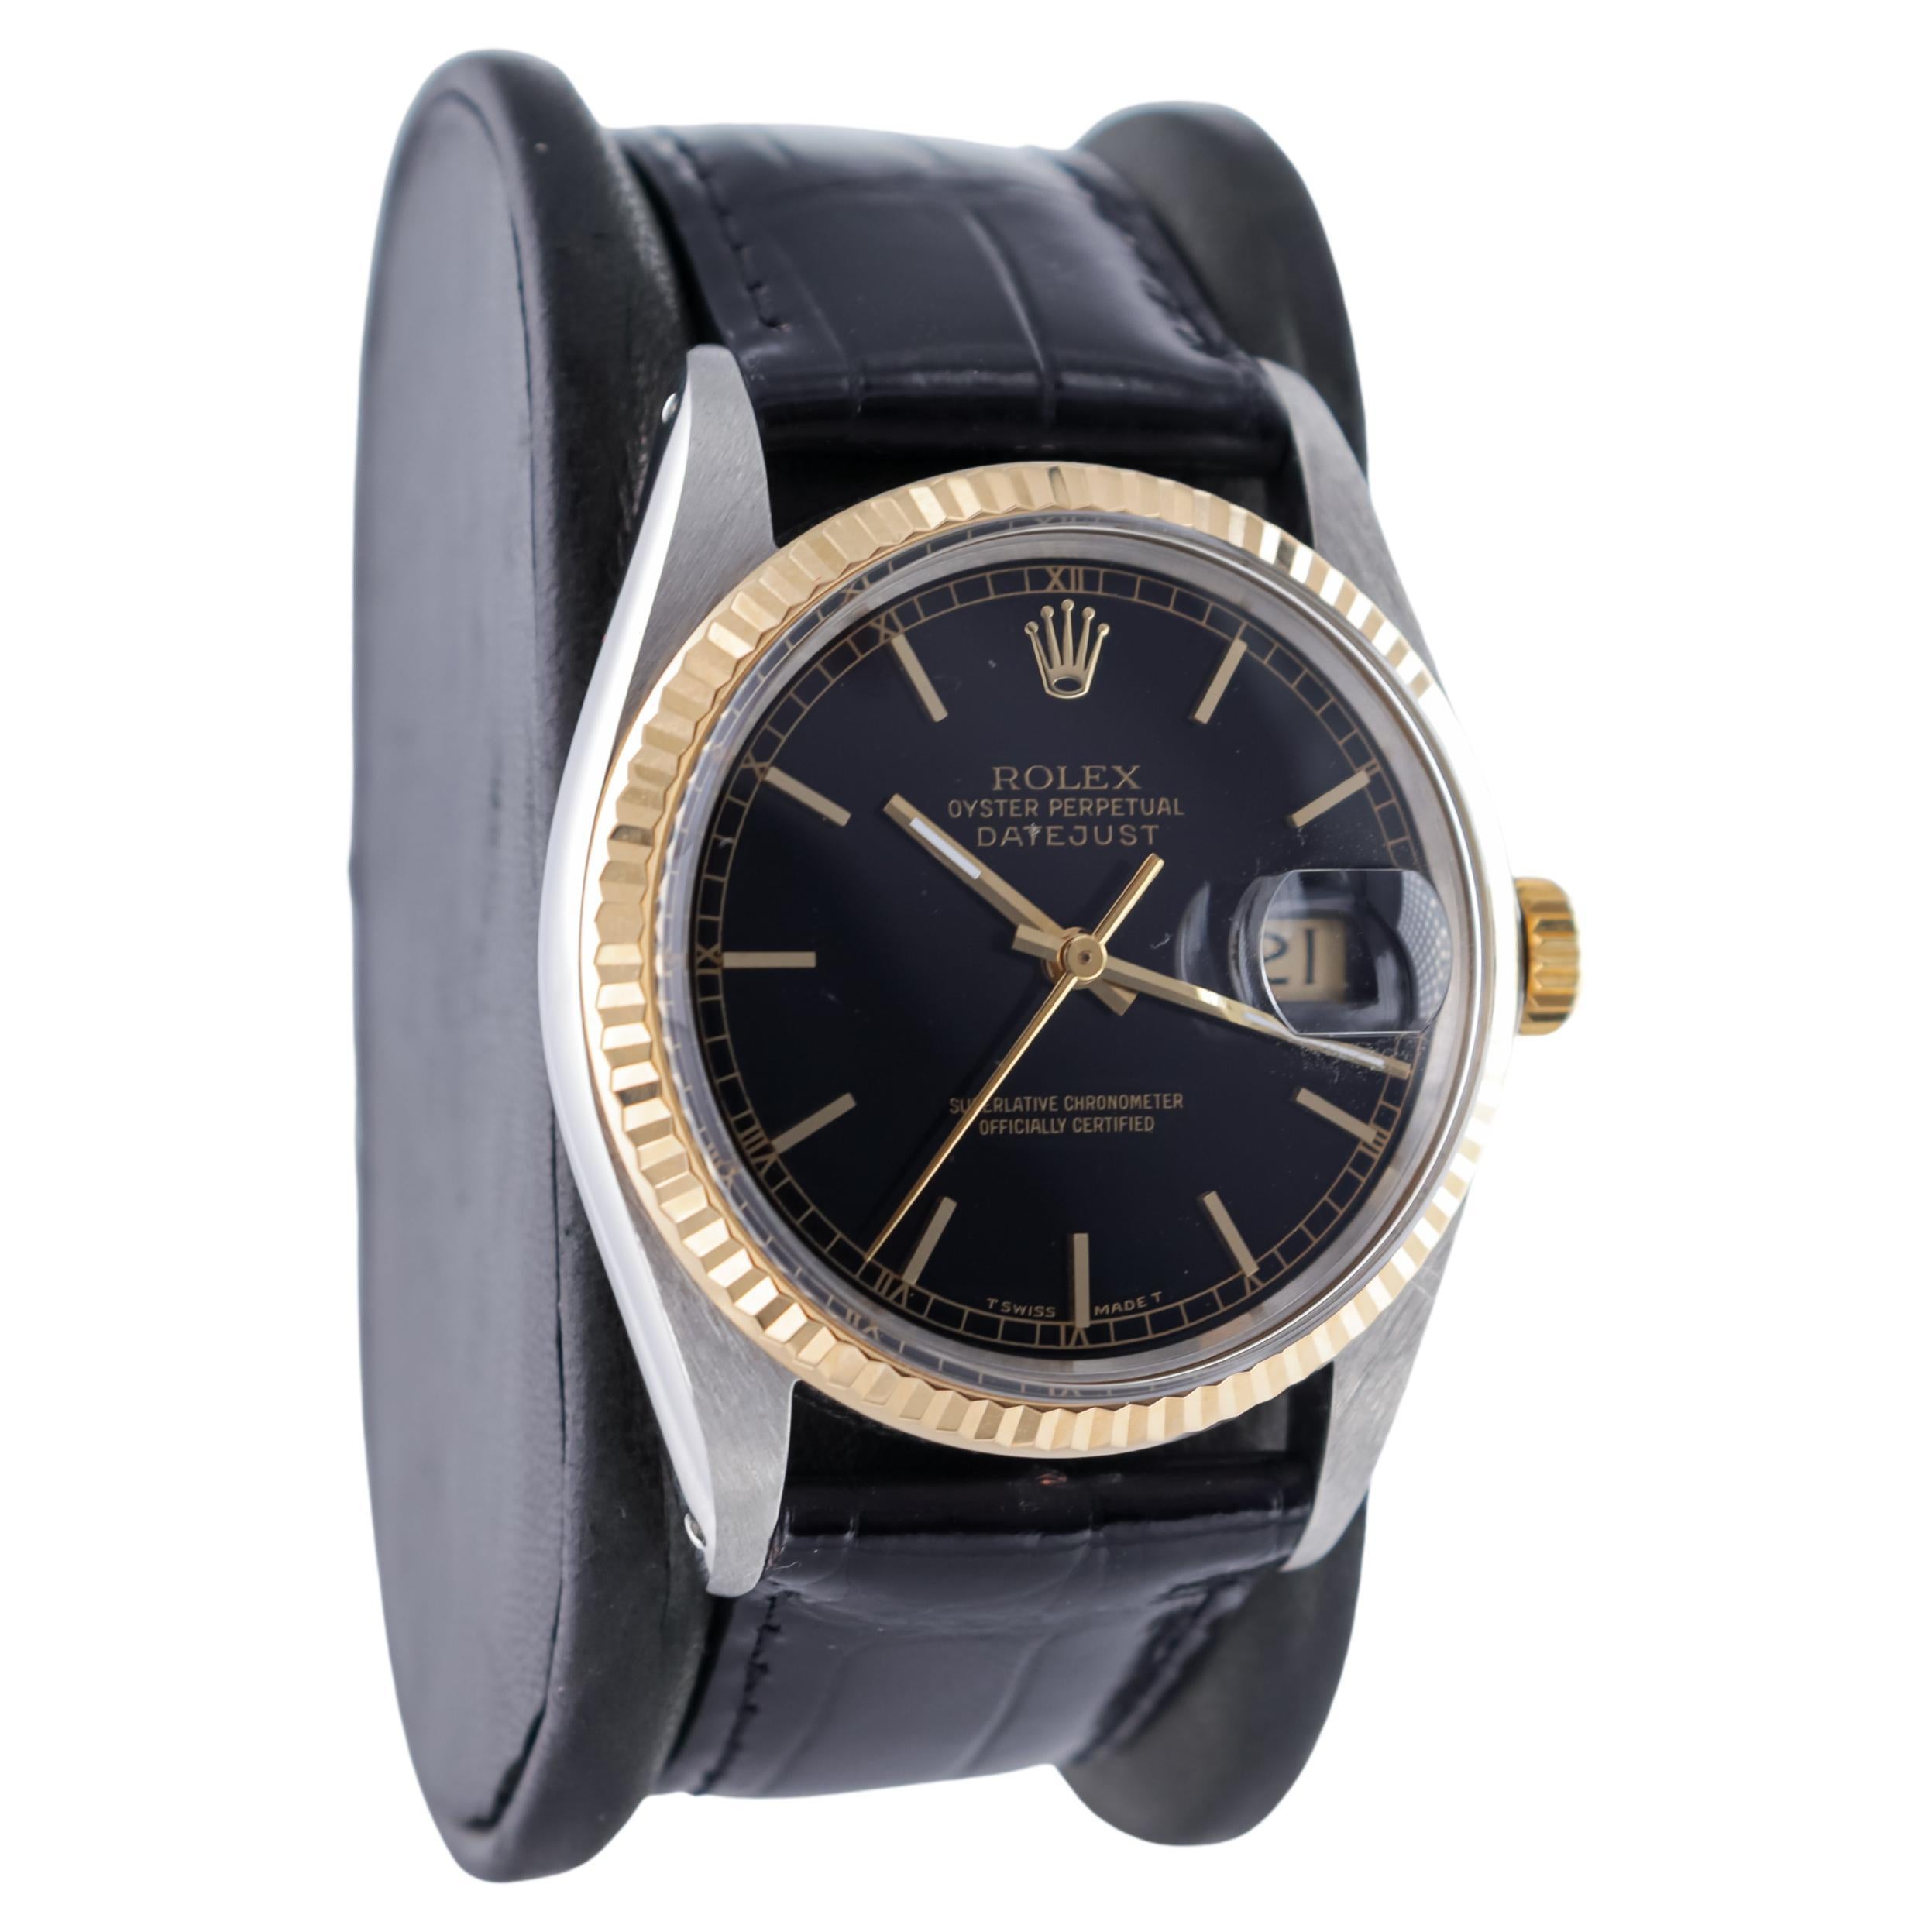 FABRIK / HAUS: Rolex Watch Company
STIL / REFERENZ: Oyster Perpetual Datejust / Referenz 1600
METALL / MATERIAL: Zweifarbiger Stahl und 18Kt. Gold
CIRCA / JAHR: 1987
ABMESSUNGEN / GRÖSSE: Länge 44mm X Durchmesser 36mm
UHRWERK / KALIBER: Ewiger